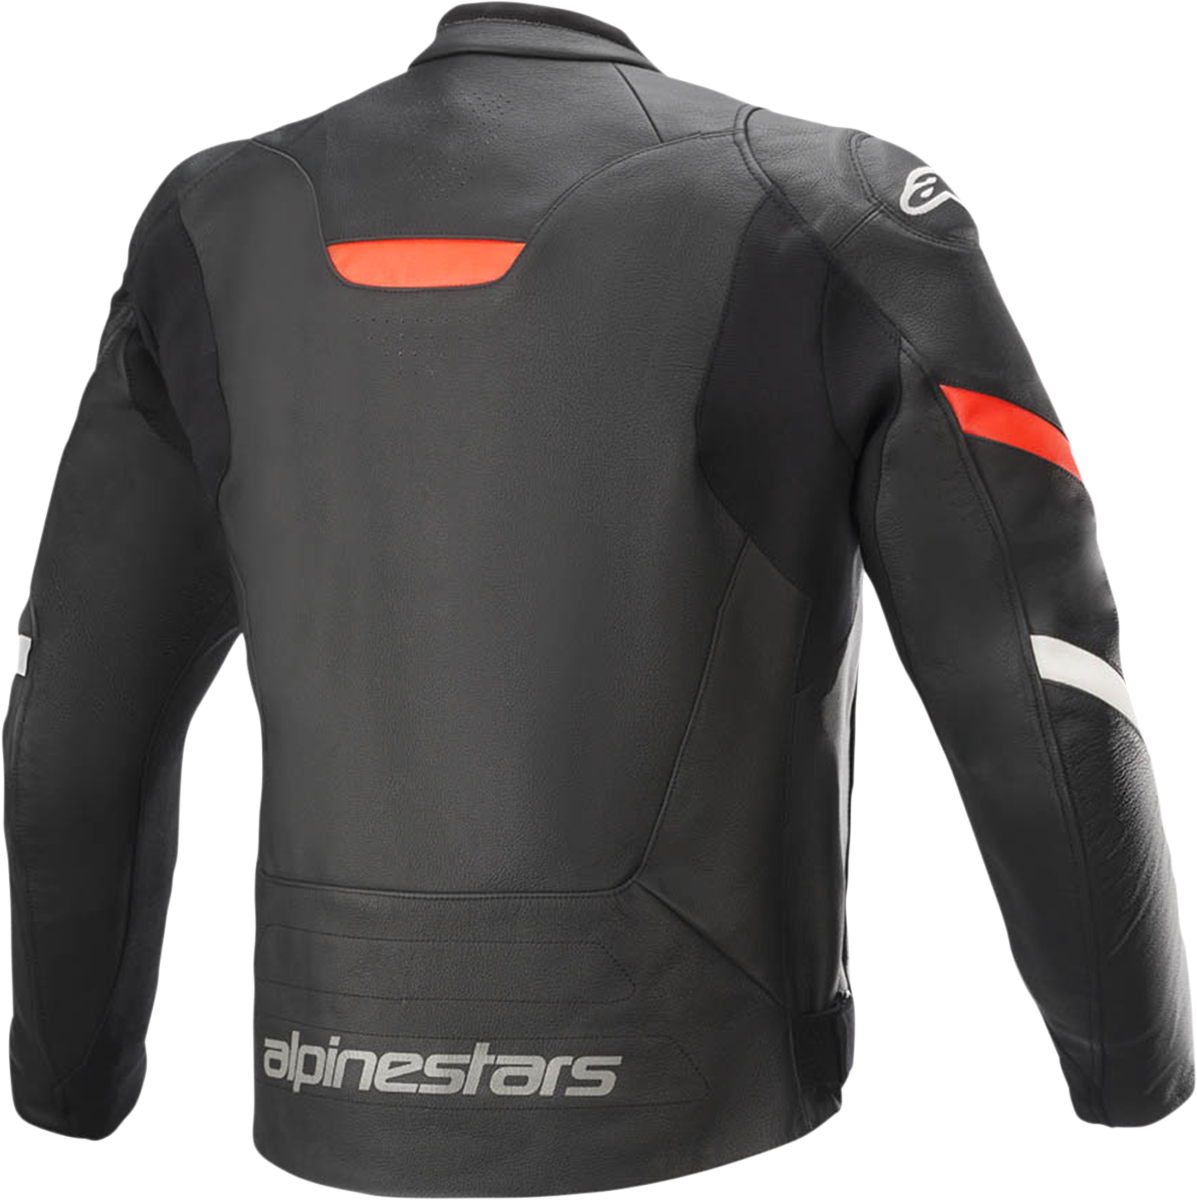 ALPINESTARS Faster v2 Leather Jacket - Black/Red - US 38 / EU 48 3103521-1030-48